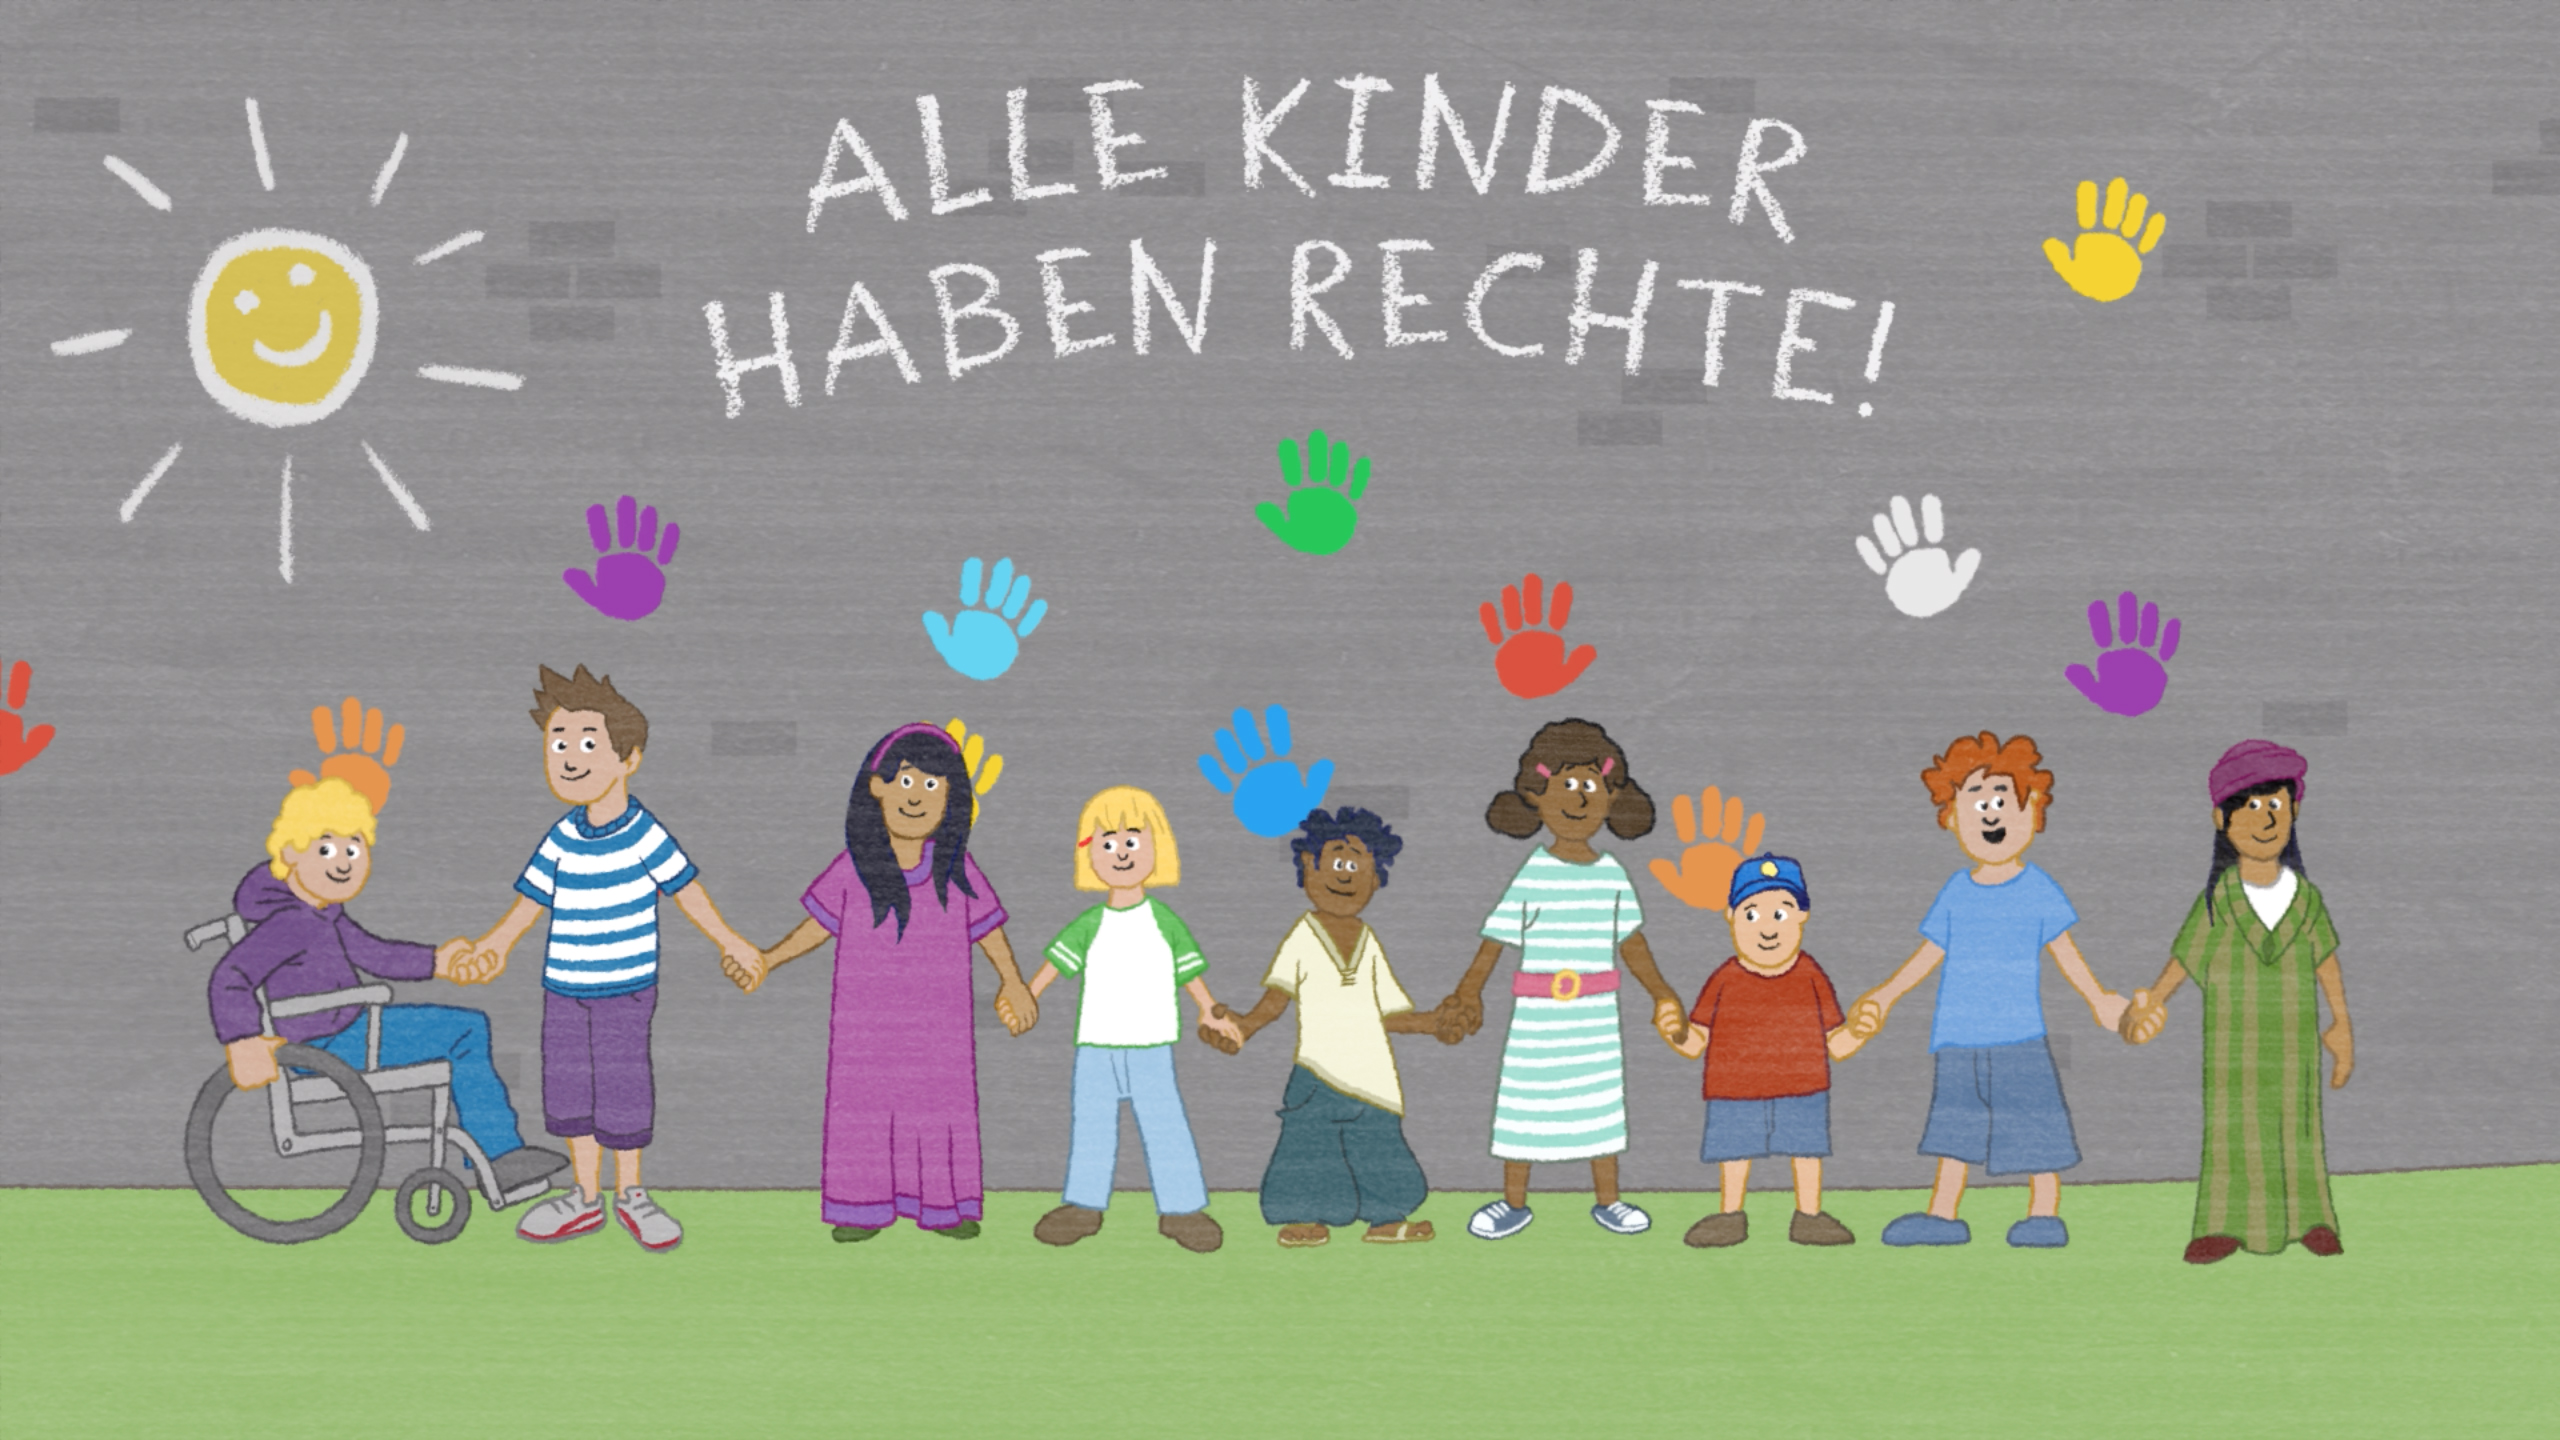 Sind die kinder der. Die Rechte der kinder :: галерея. Die Rechte der kinder (1997- ) Германия. Die Rechte der kinder Вики. Das kind группа.